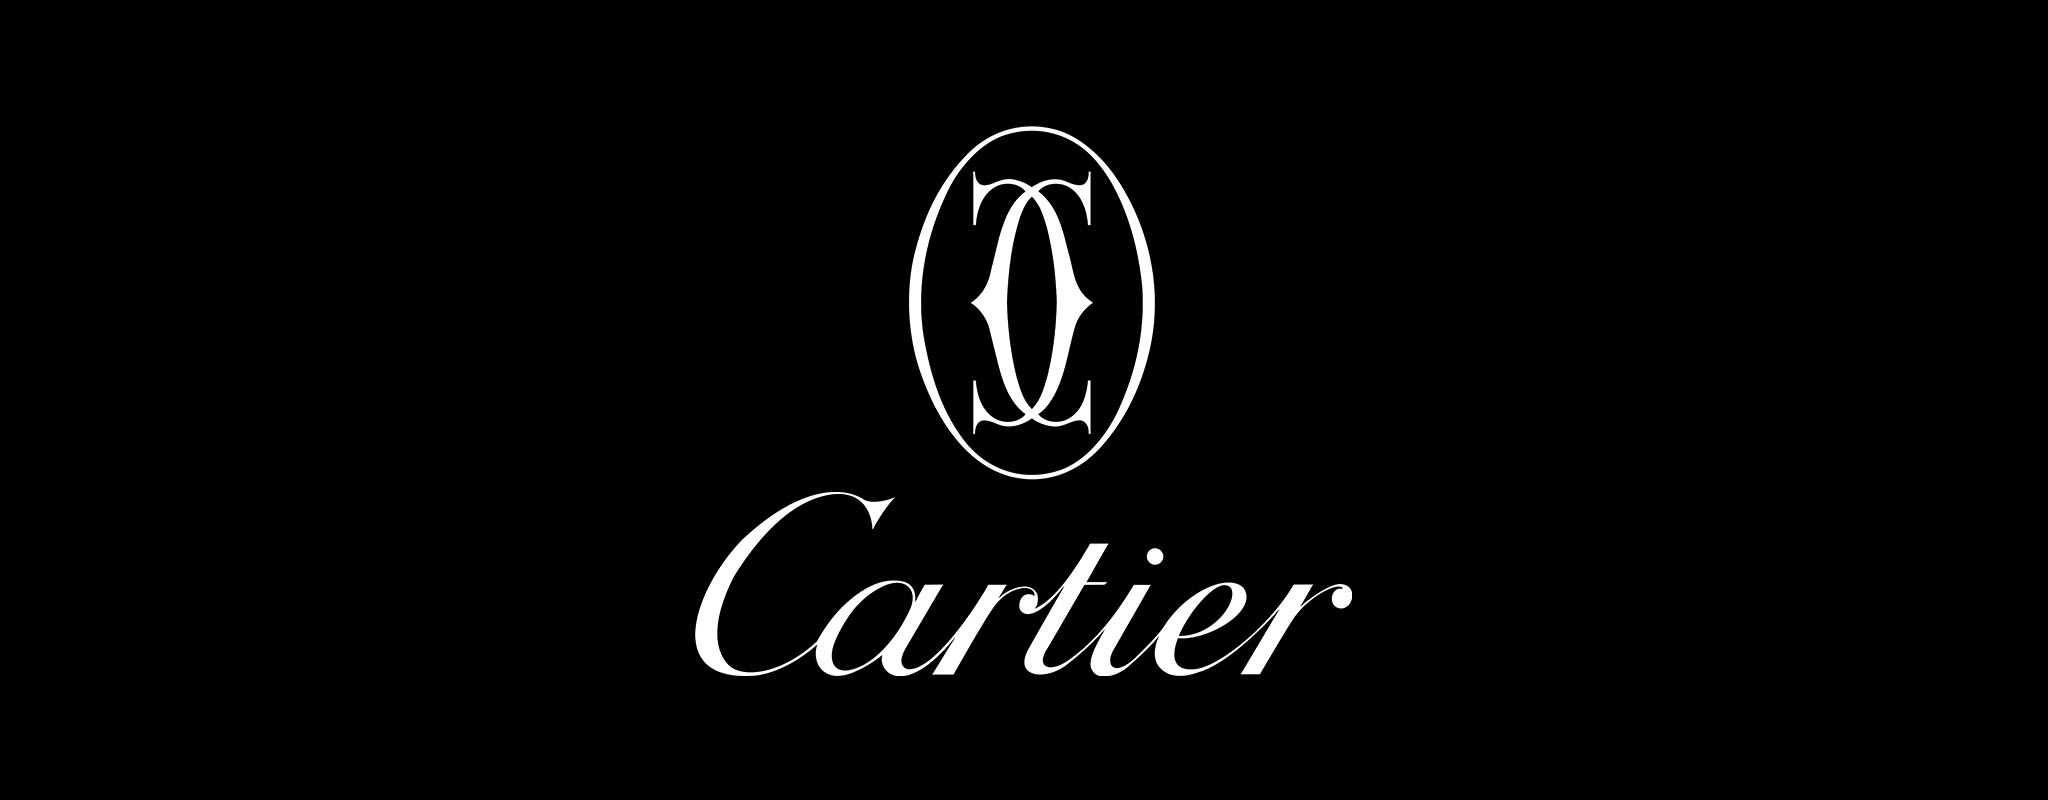 Cartier Bildzeichen